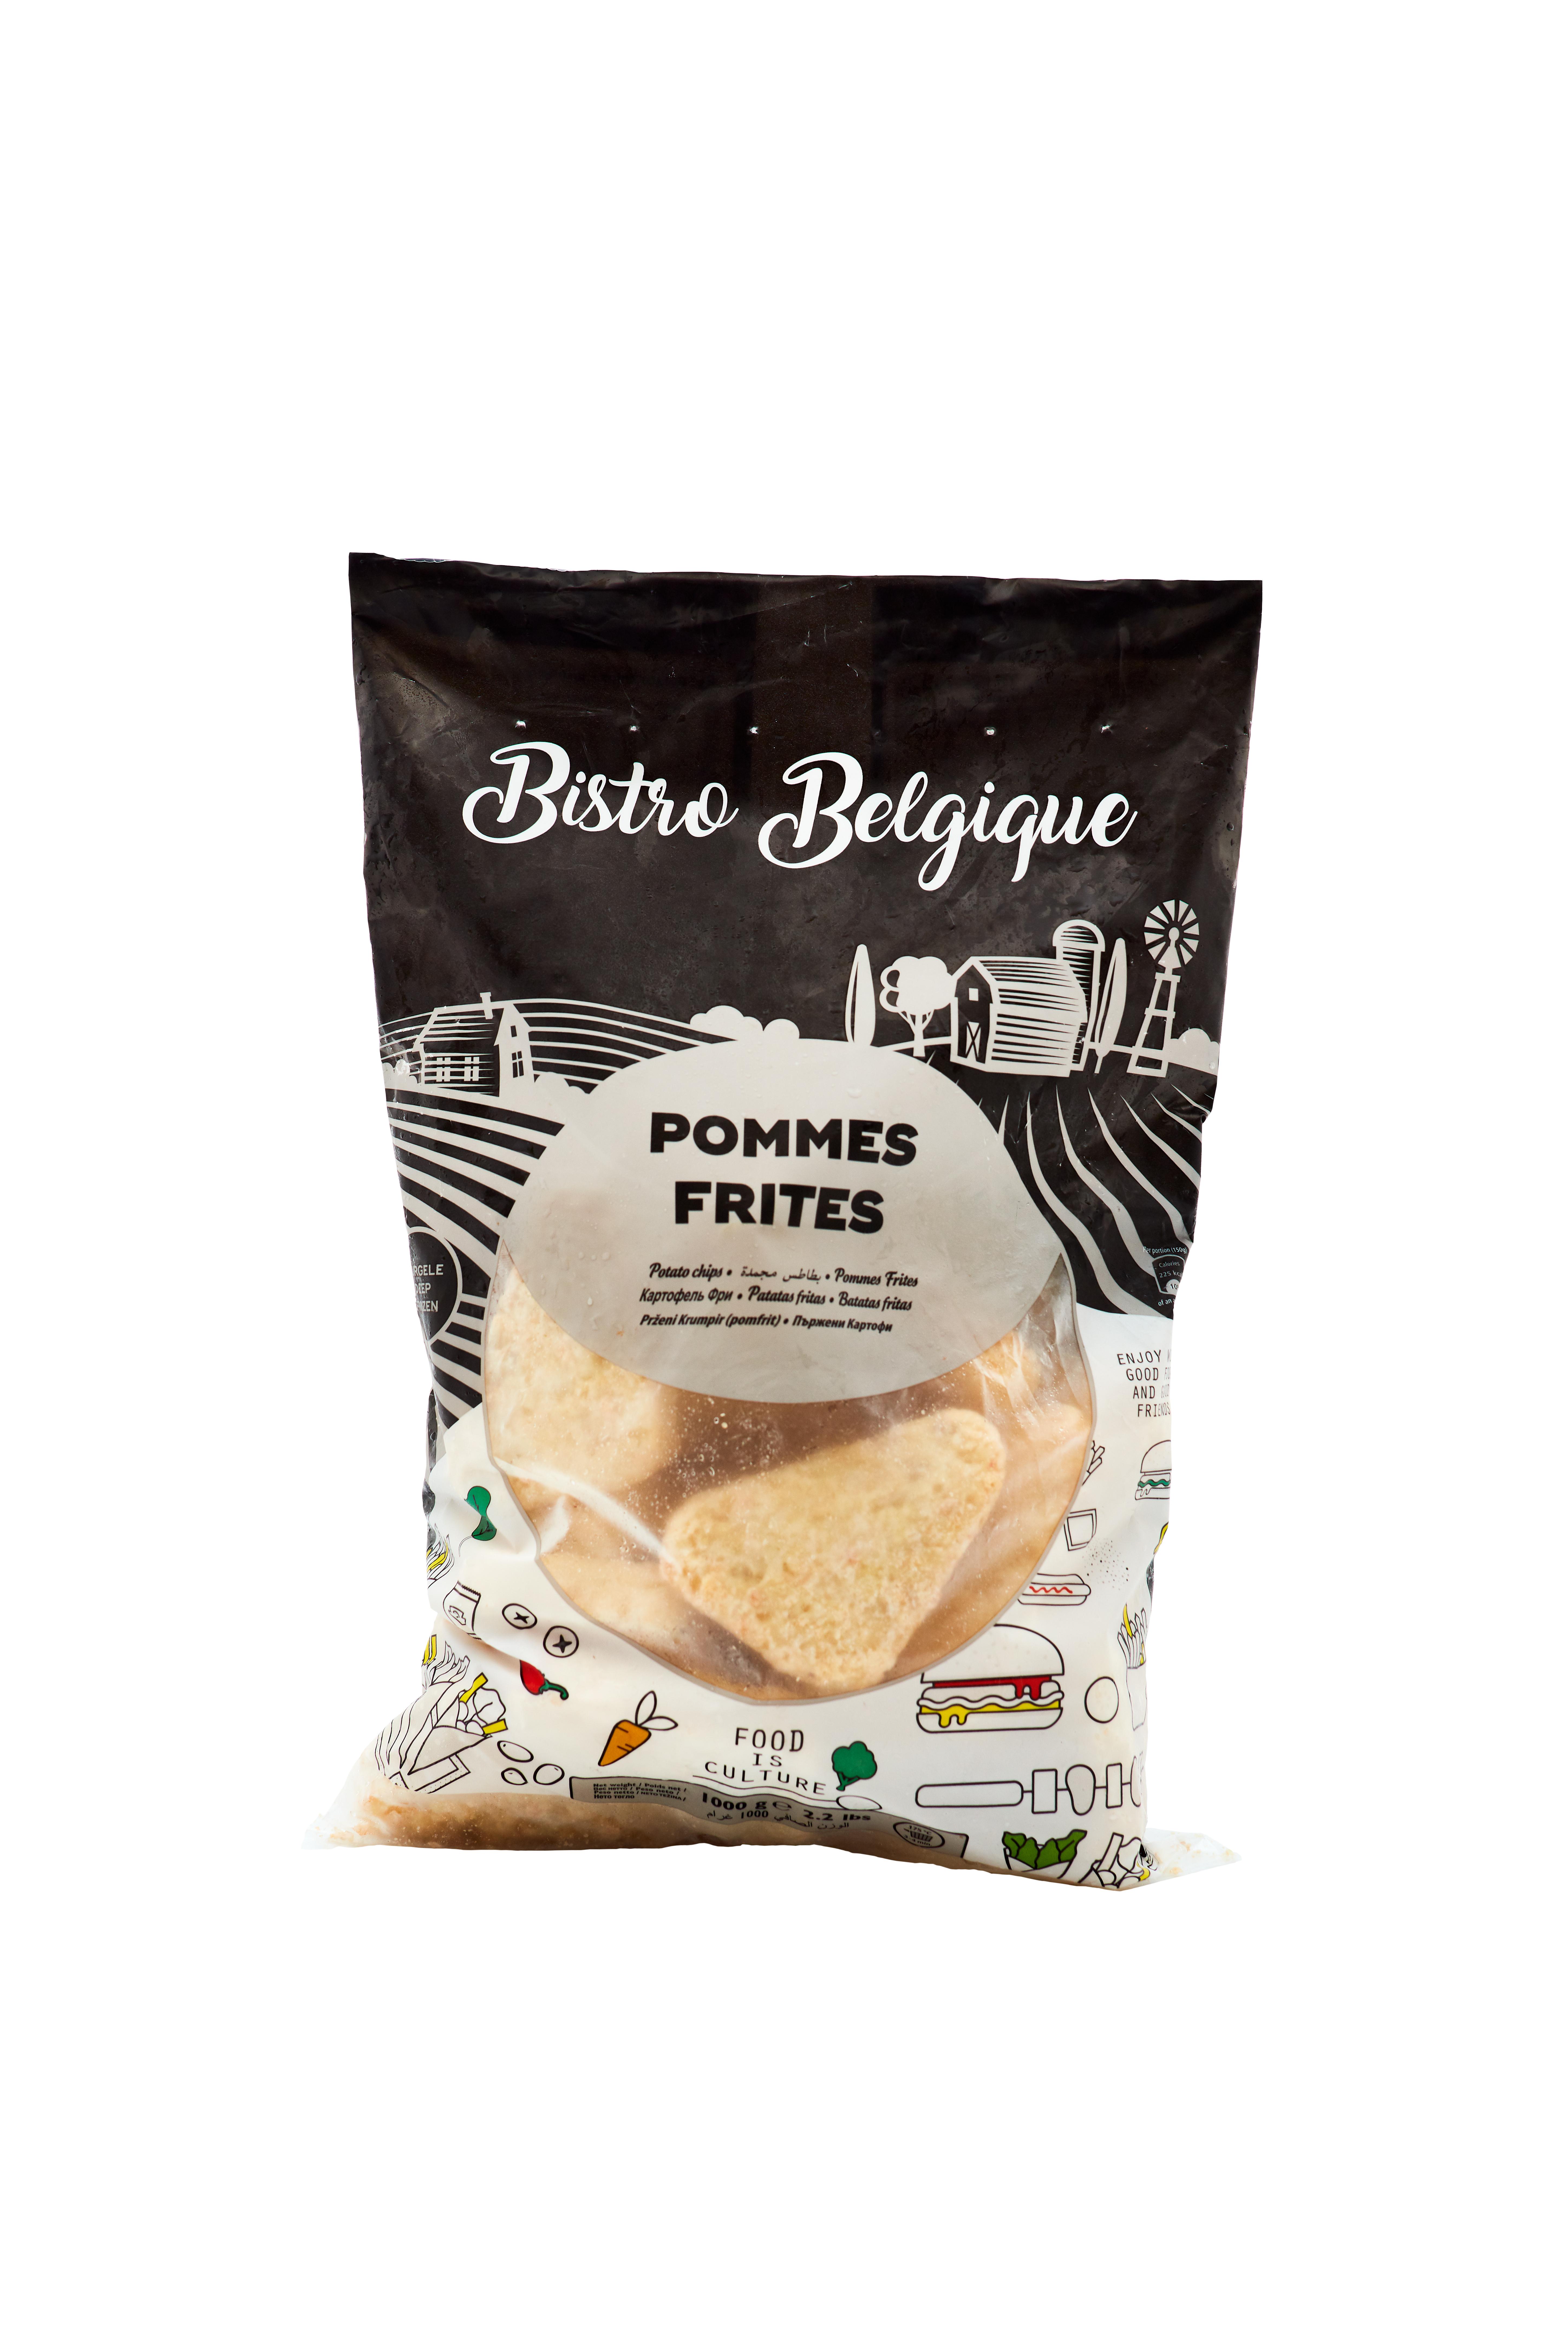 hash browns Bistro Belgique brand